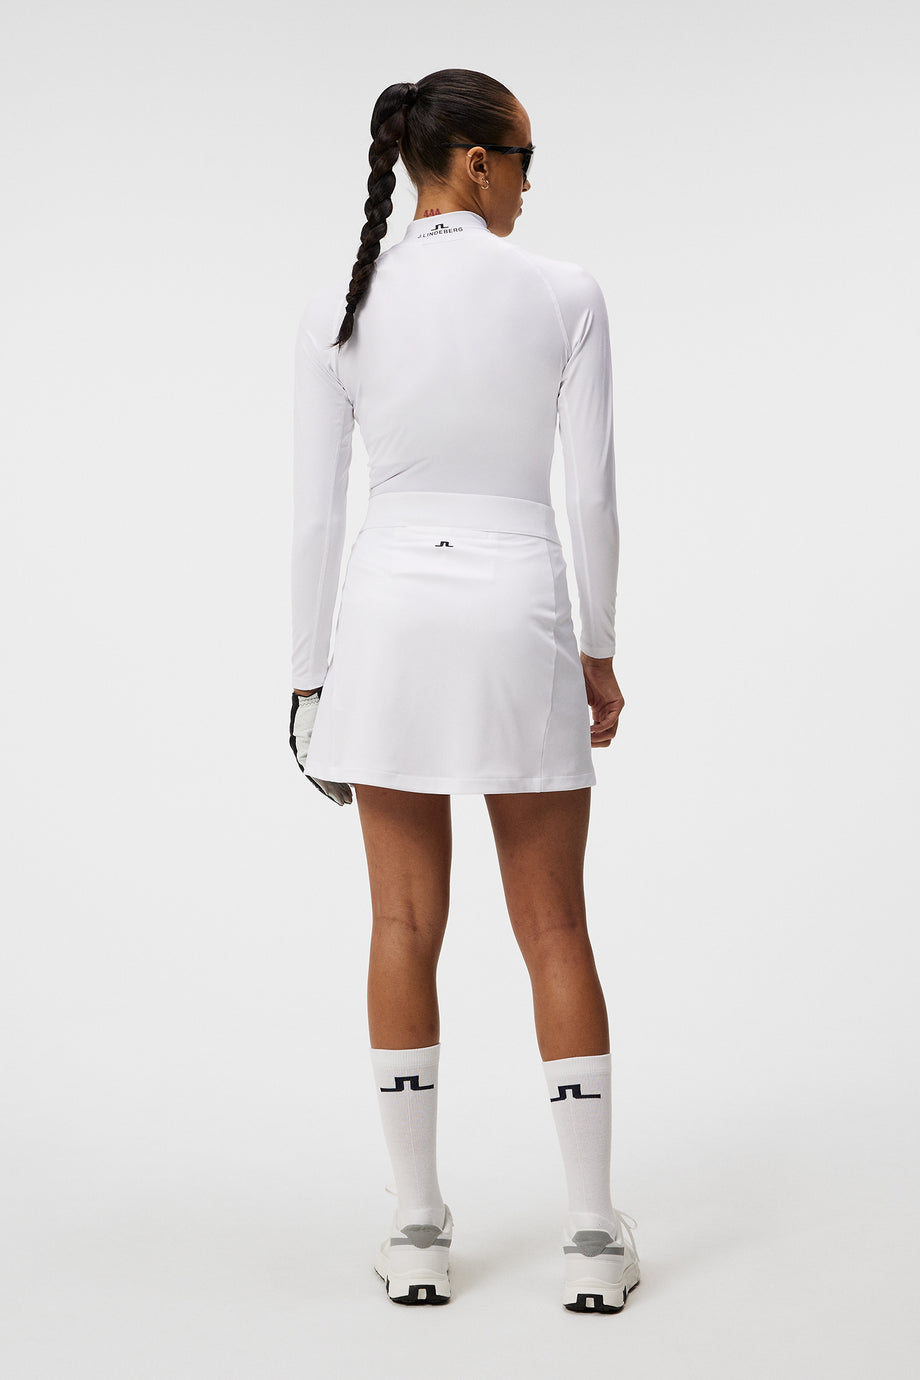 Amelie Mid Golf Skirt / White